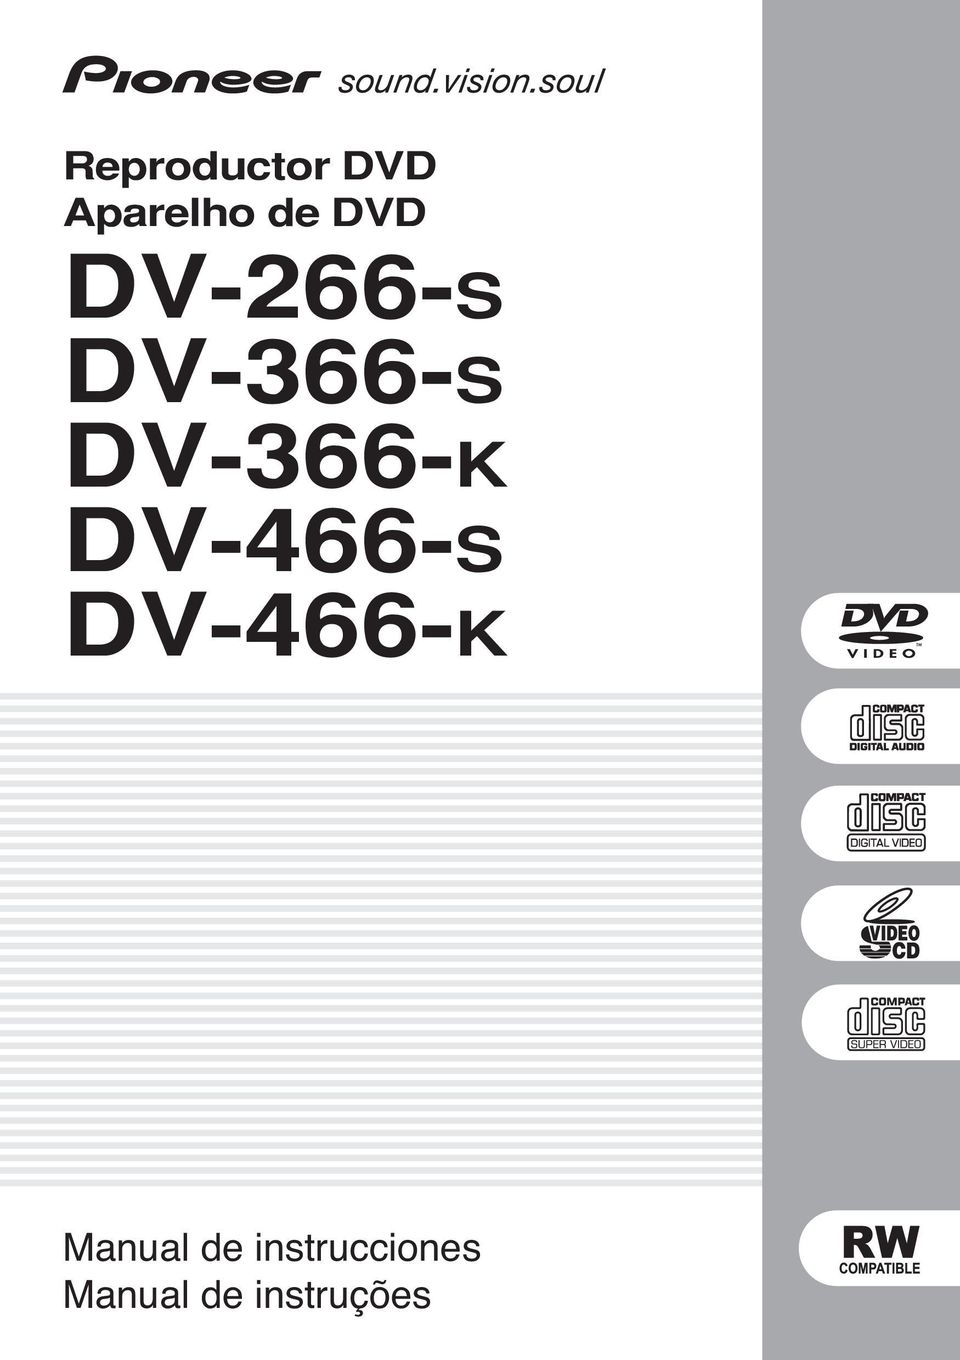 DV-466-S DV-466-K Manual de